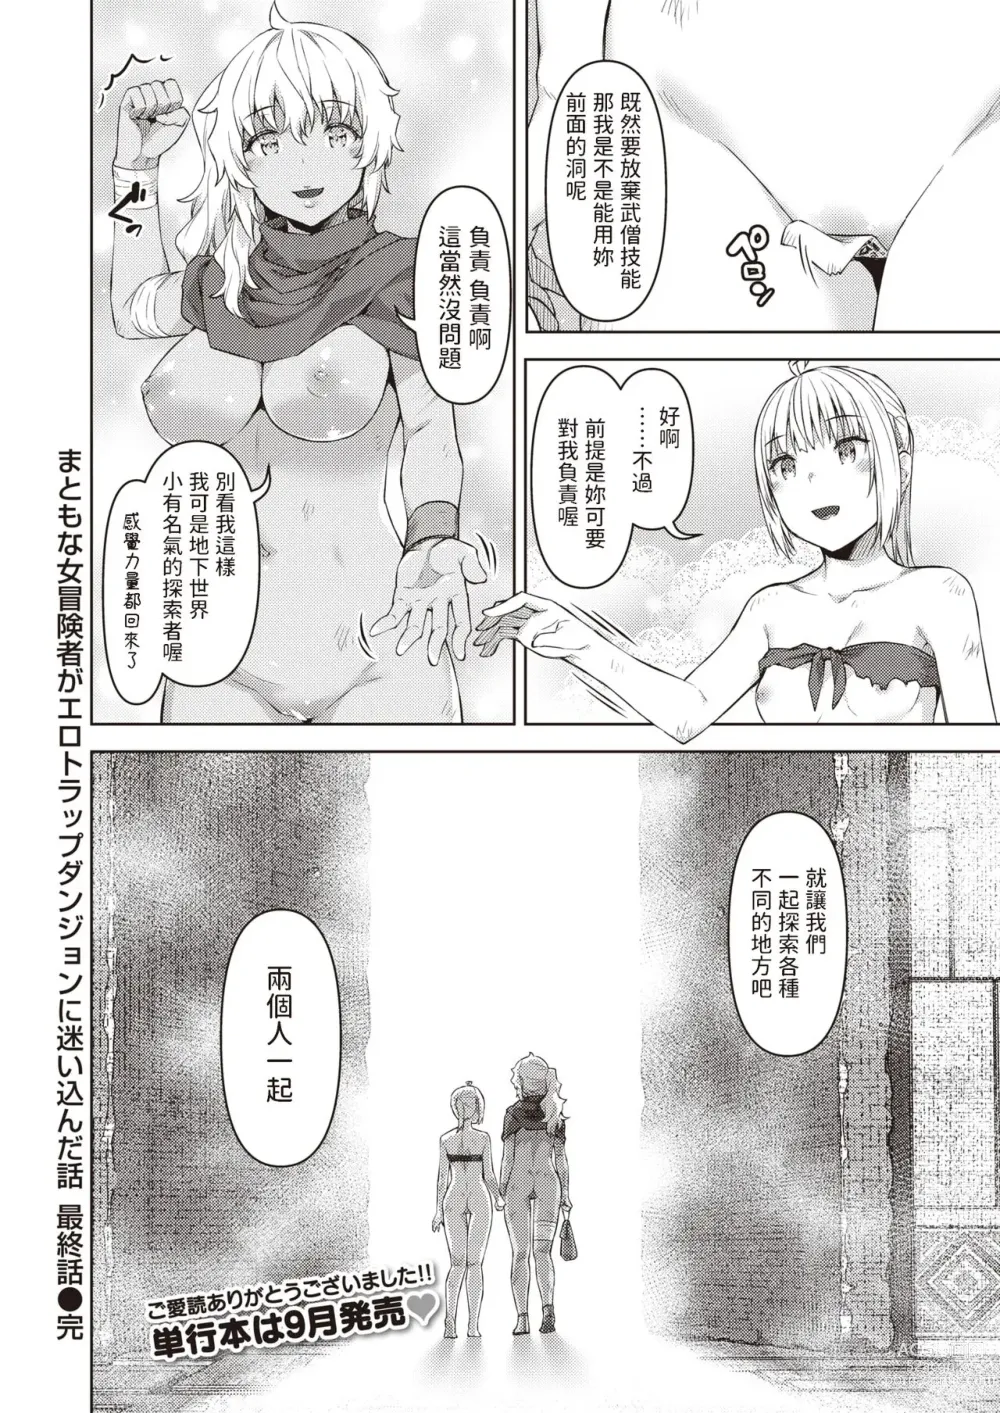 Page 18 of manga Matomo na Onna Boukensha ga Ero Trap Dungeon ni Mayoikonda Hanashi Saishuuwa